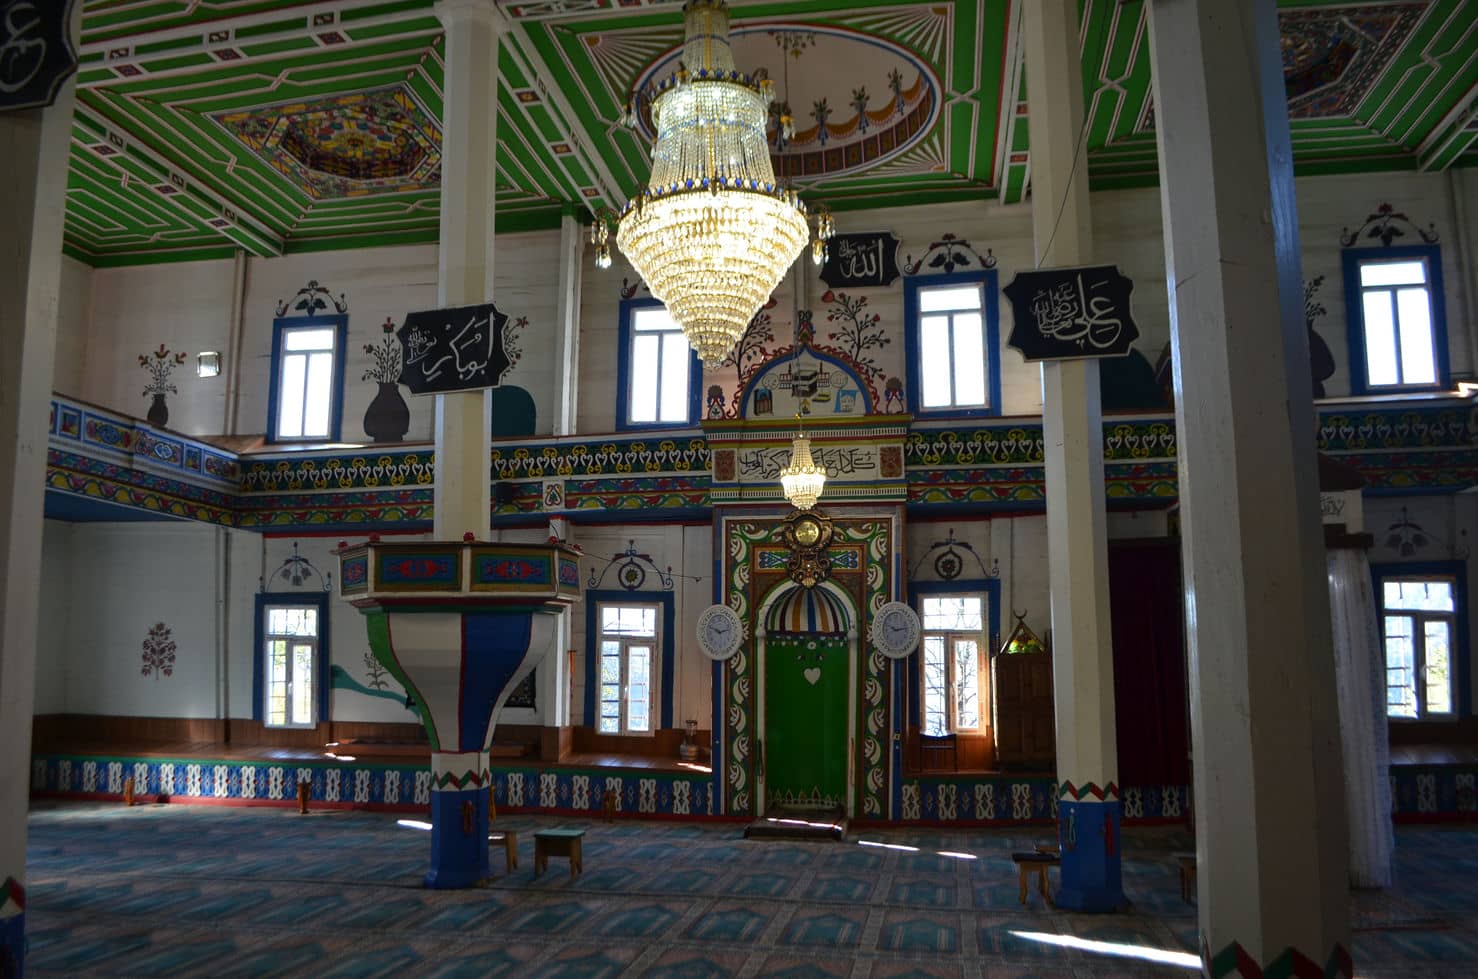 Gordzhomi Mosque